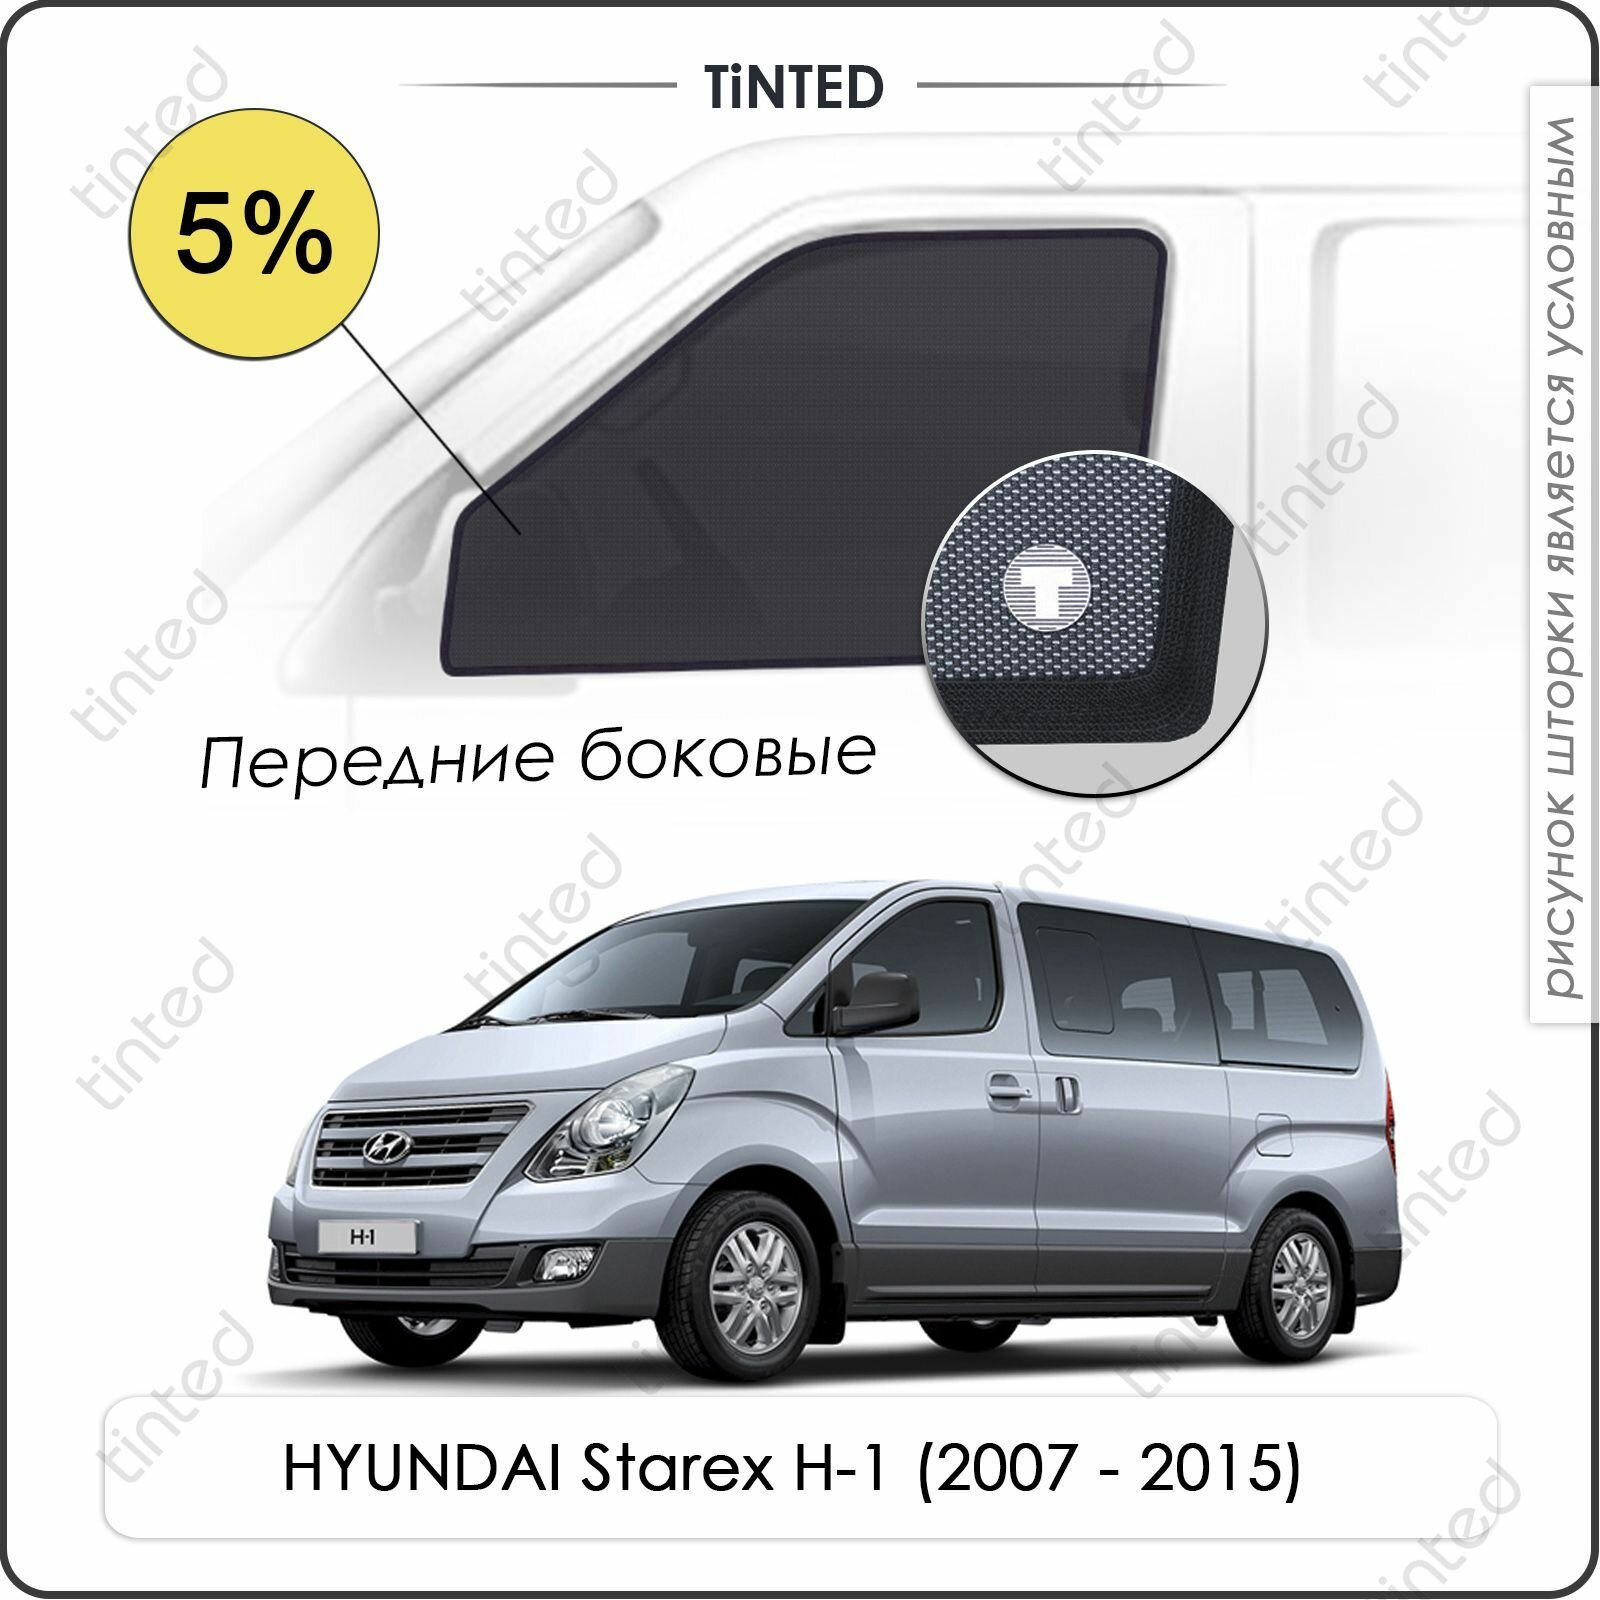 Шторки на автомобиль солнцезащитные HYUNDAI Starex H-1 1 Микроавтобус 5дв. (2007 - 2015) на передние двери 5%, сетки от солнца в машину хёндай старекс Х-11, Каркасные автошторки Premium